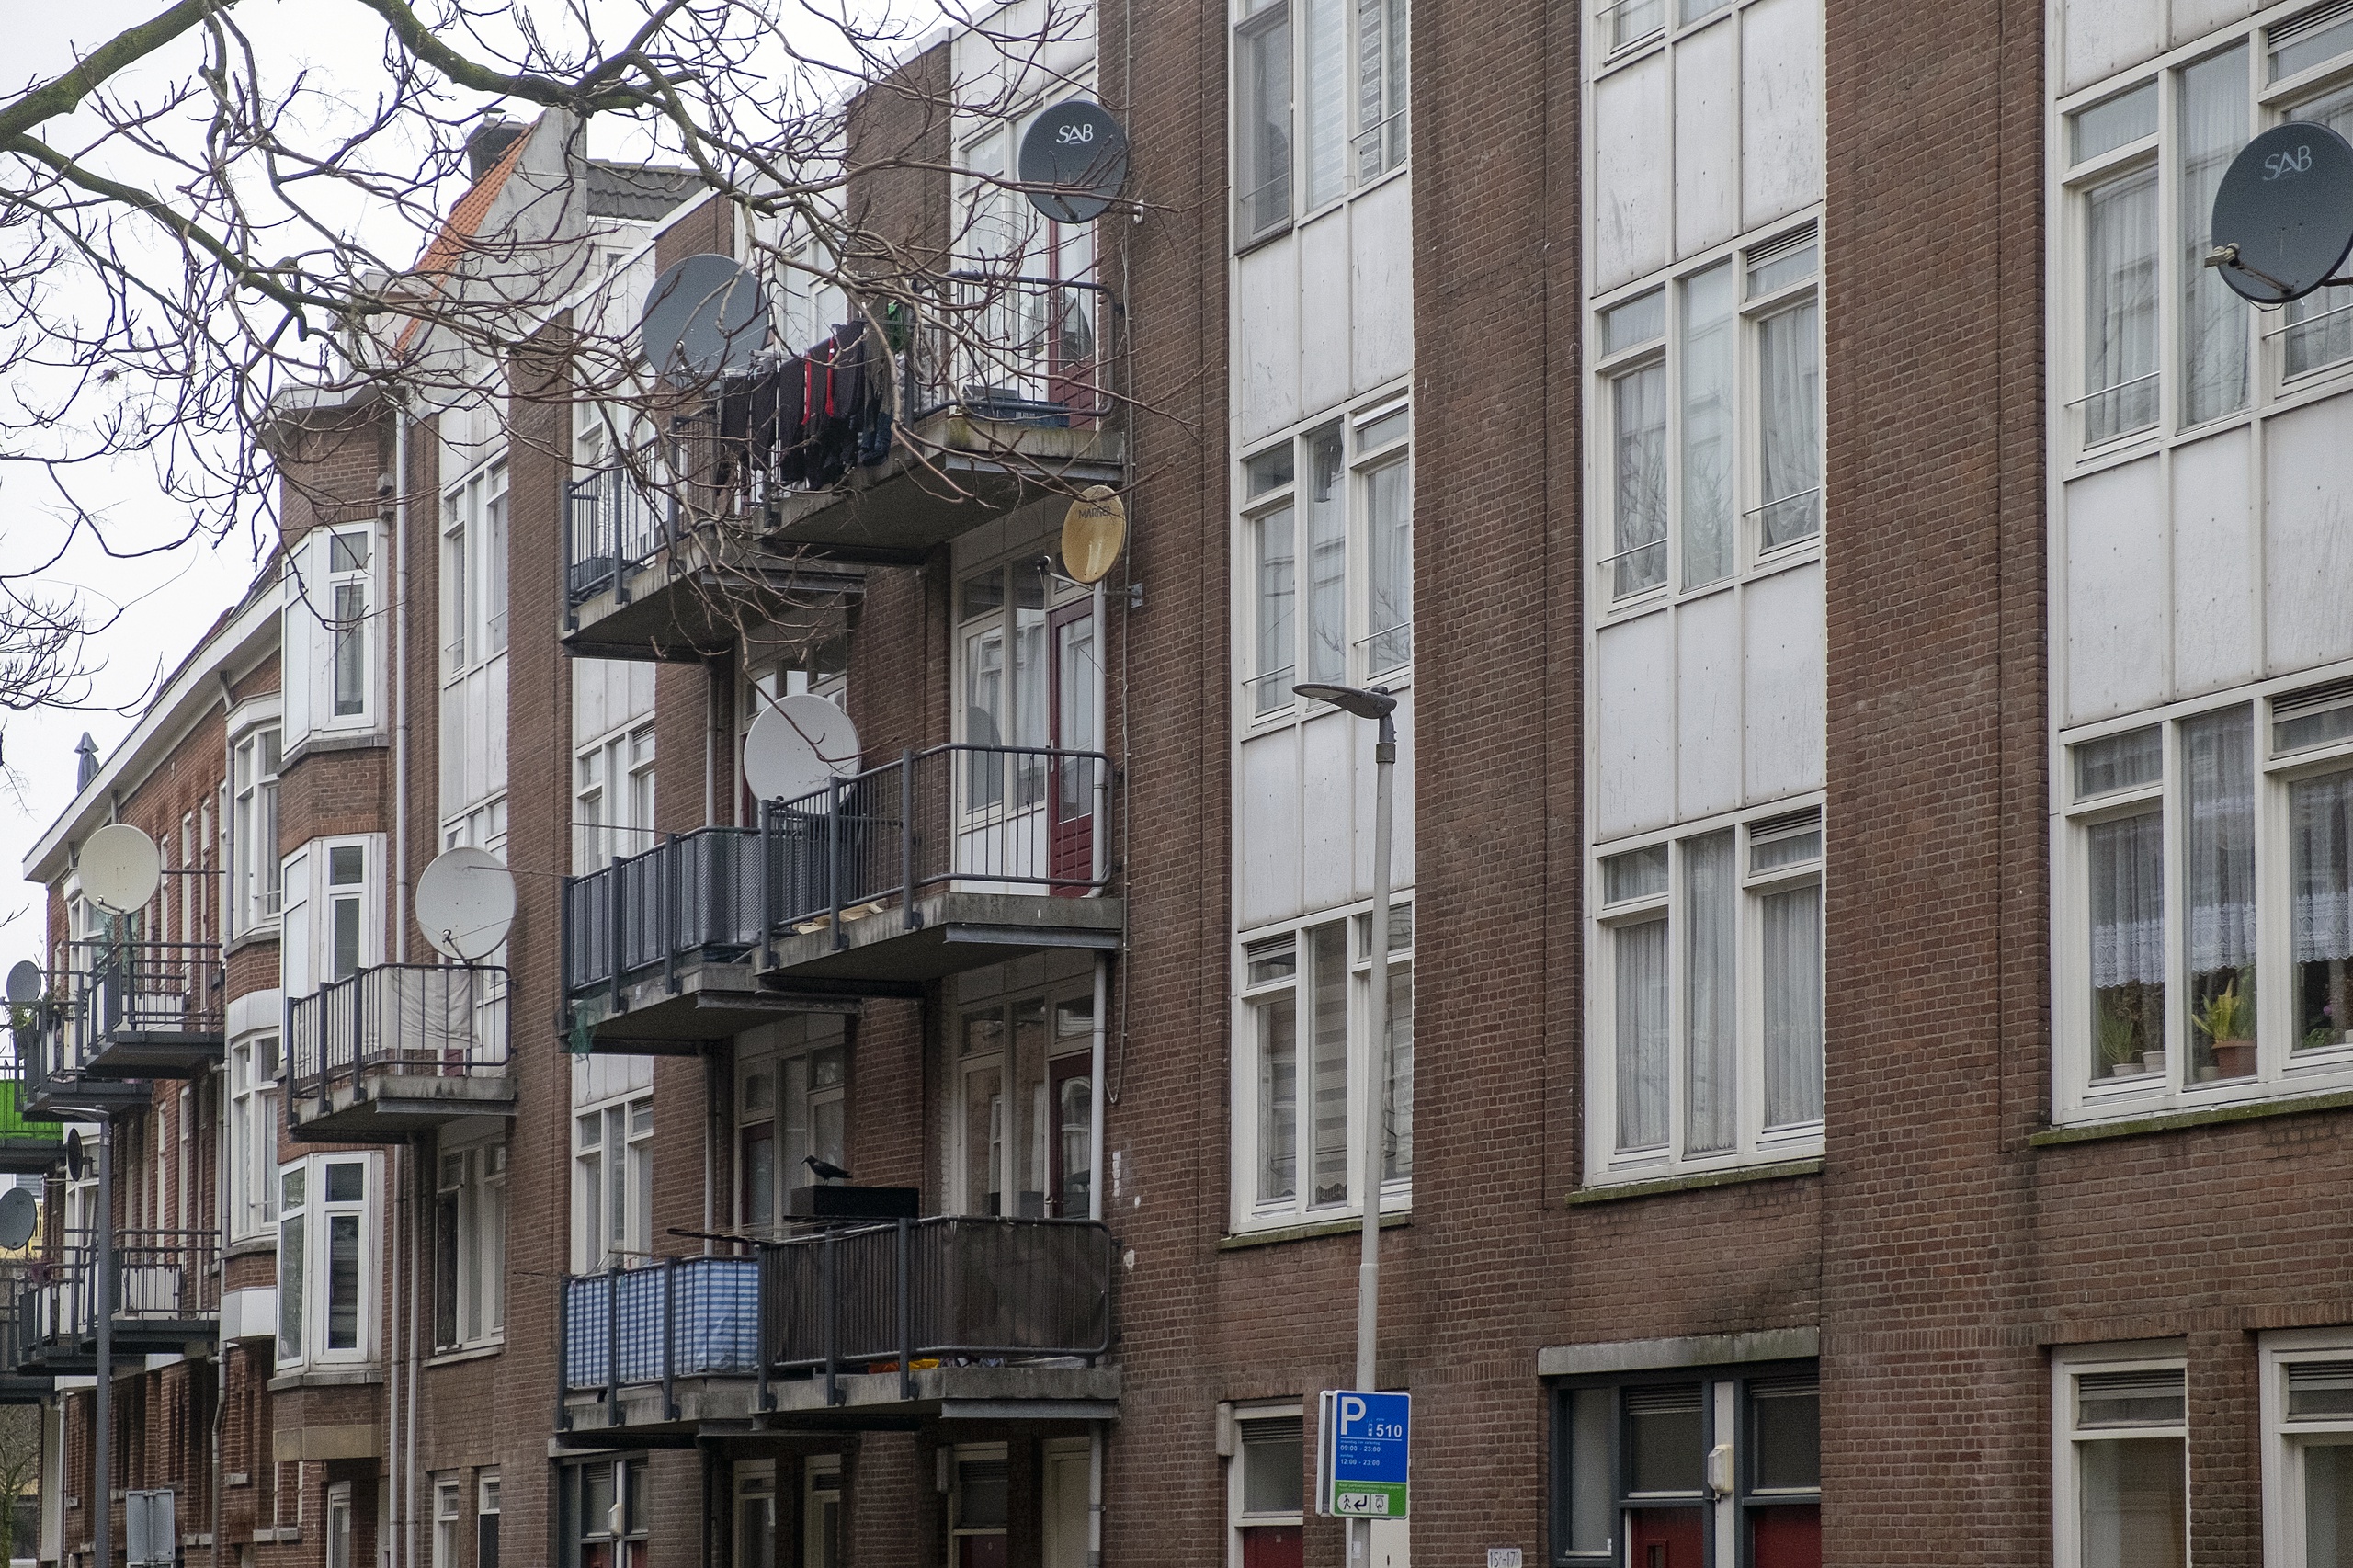 Het aantal sociale huurwoningen in Nederland gaat de aankomende jaren alleen maar dalen, terwijl minister Hugo de Jonge voor Volkshuisvesting en Ruimtelijke Ordening er juist meer wil hebben. En dat heeft alles te maken met het bouwbeleid en het verkoopbeleid van corporaties, zo denkt hoogleraar Woningbouw Peter Boelhouwer van de TU Delft.